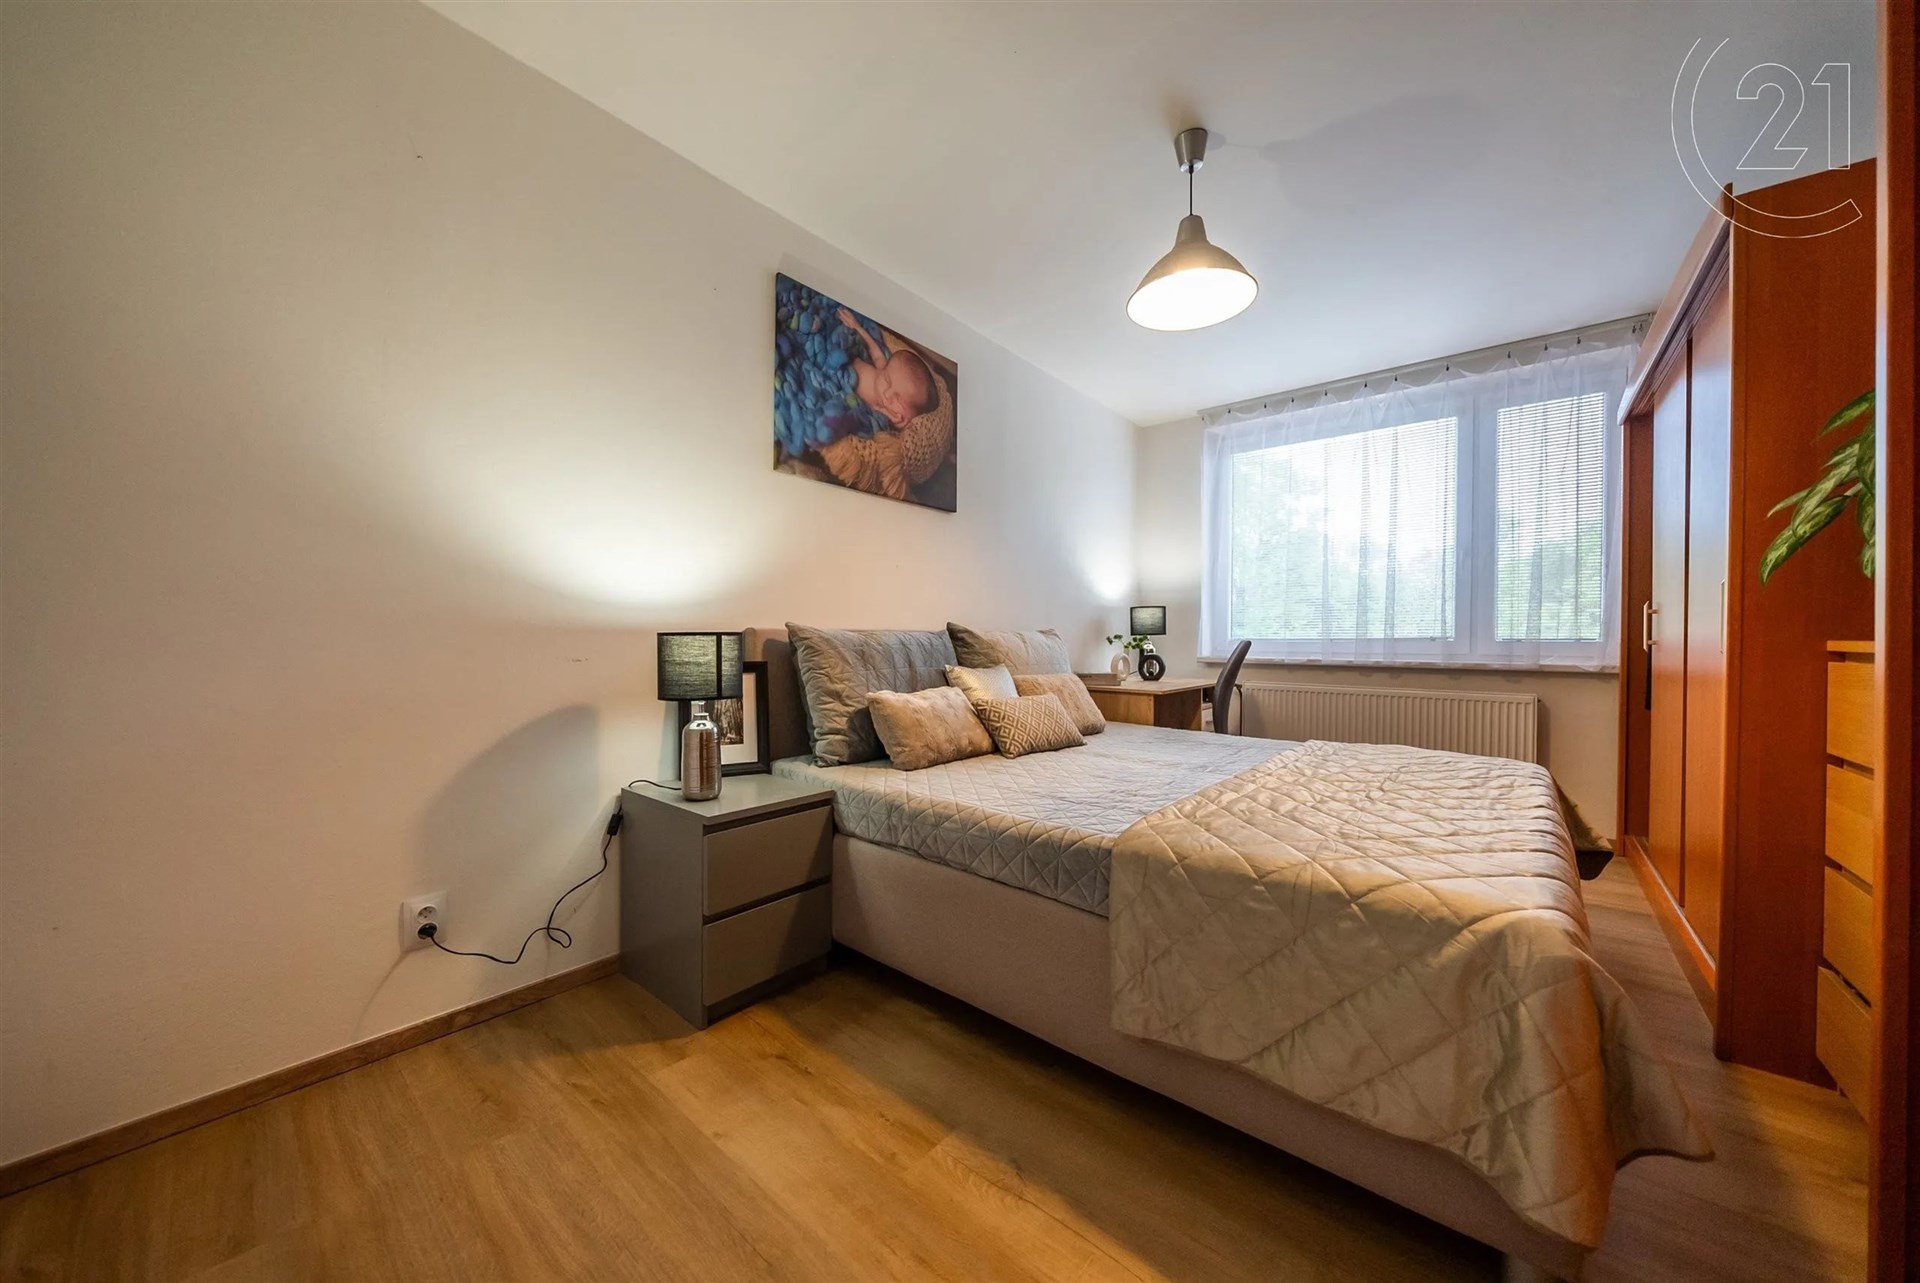 pokoj / ložnice s radiátor, dřevěná podlaha, a přirozené světlo